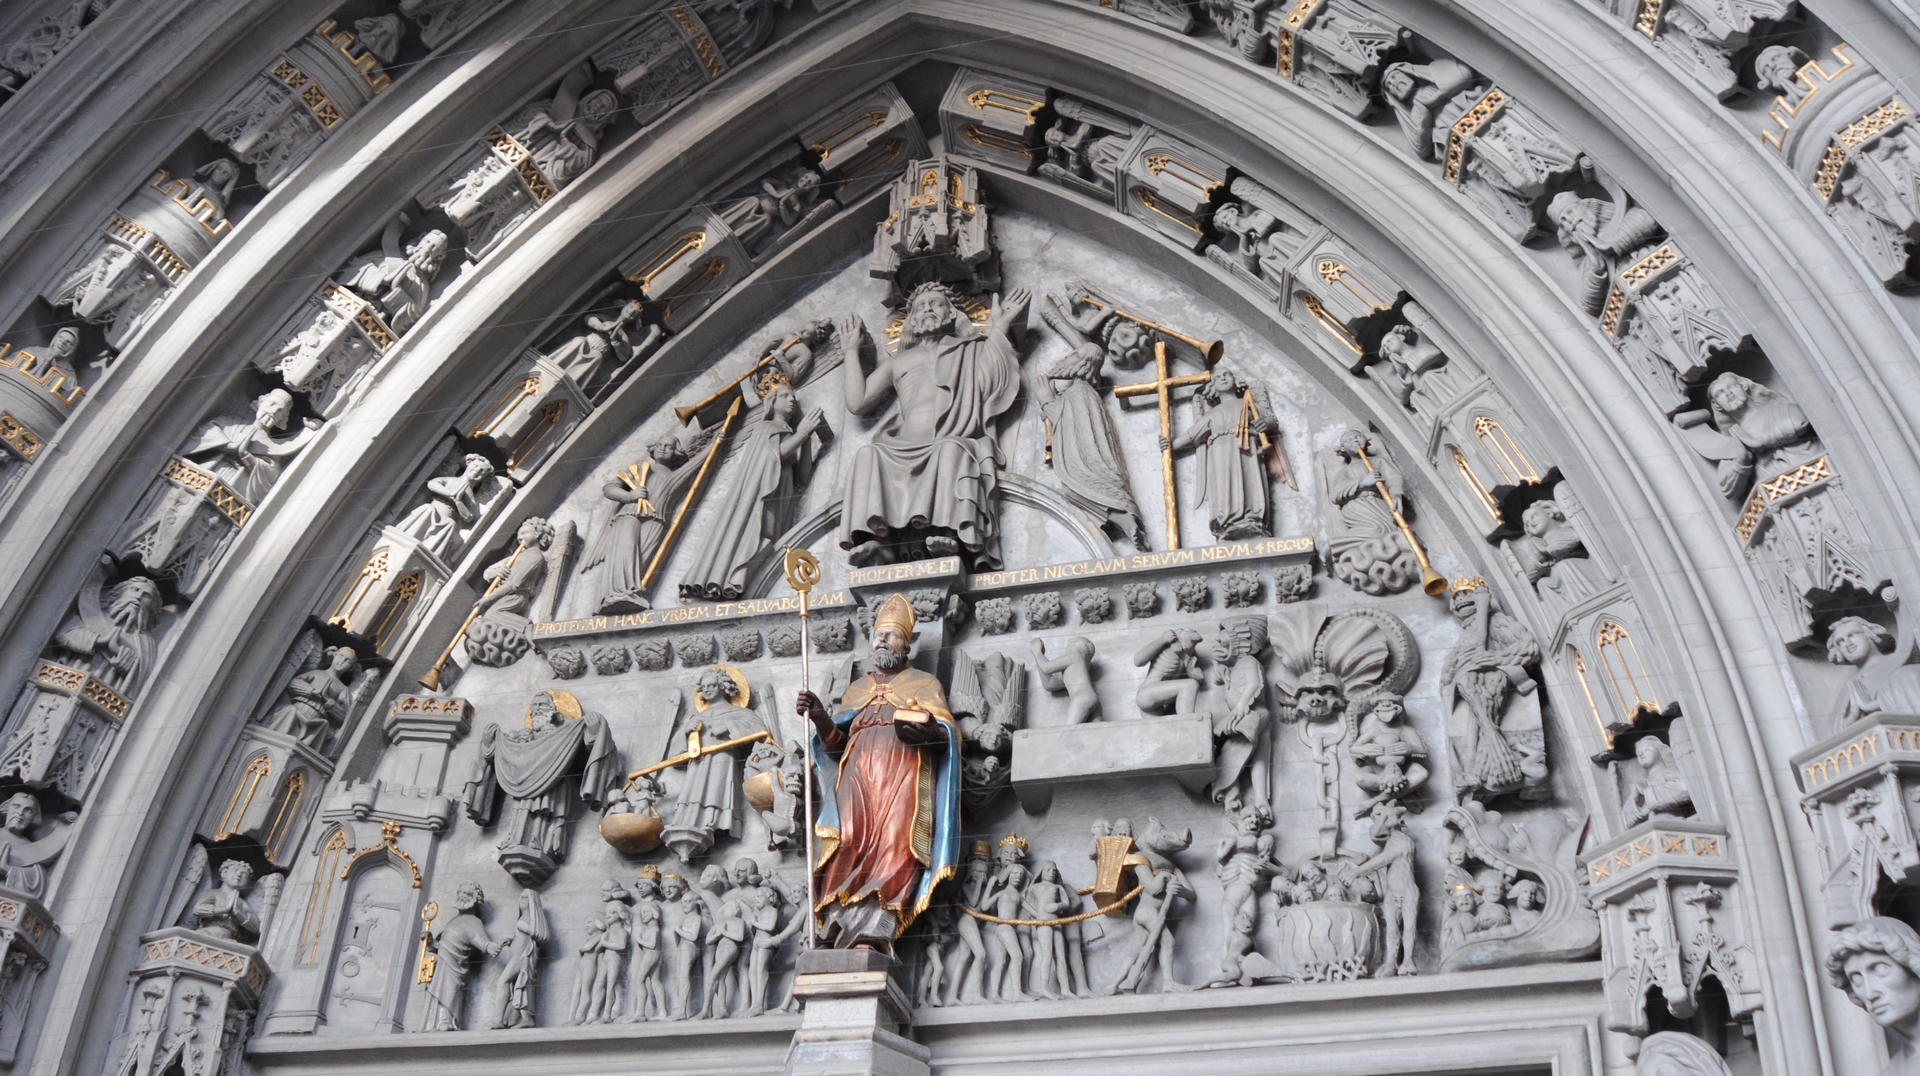 Le portail du jugement dernier de la cathédrale Saint Nicolas de Fribourg (photo Maurice Page)